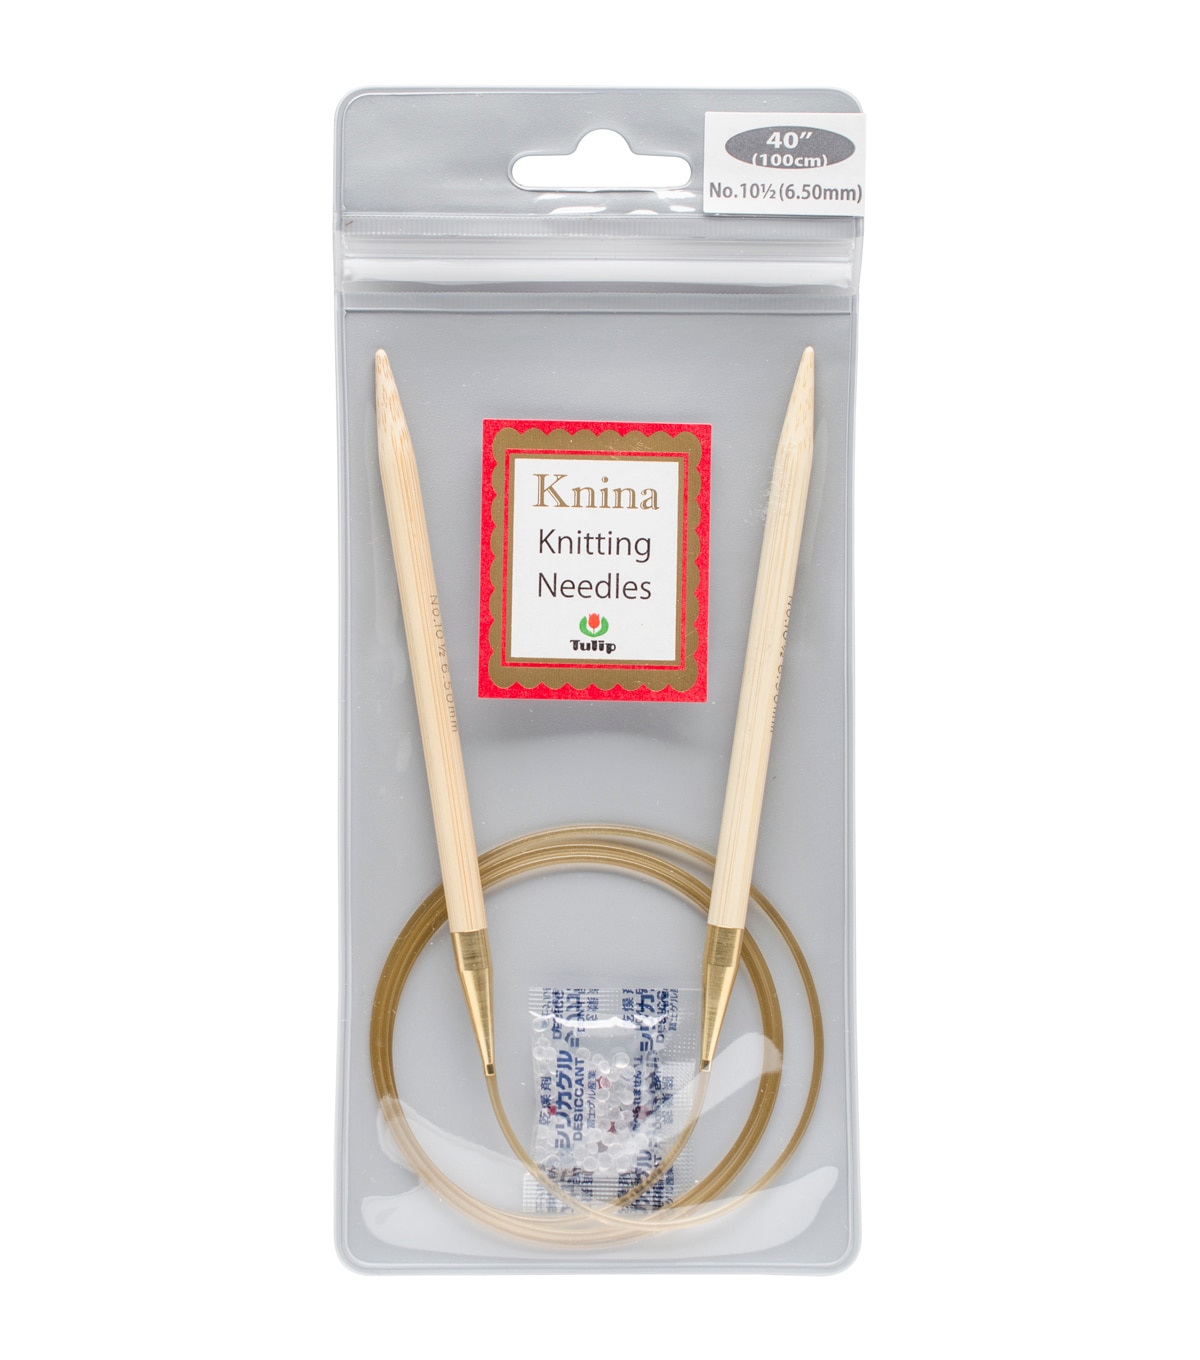 Tulip Needle Company Knina Knitting Needles 40'' Size 10.5 | JOANN